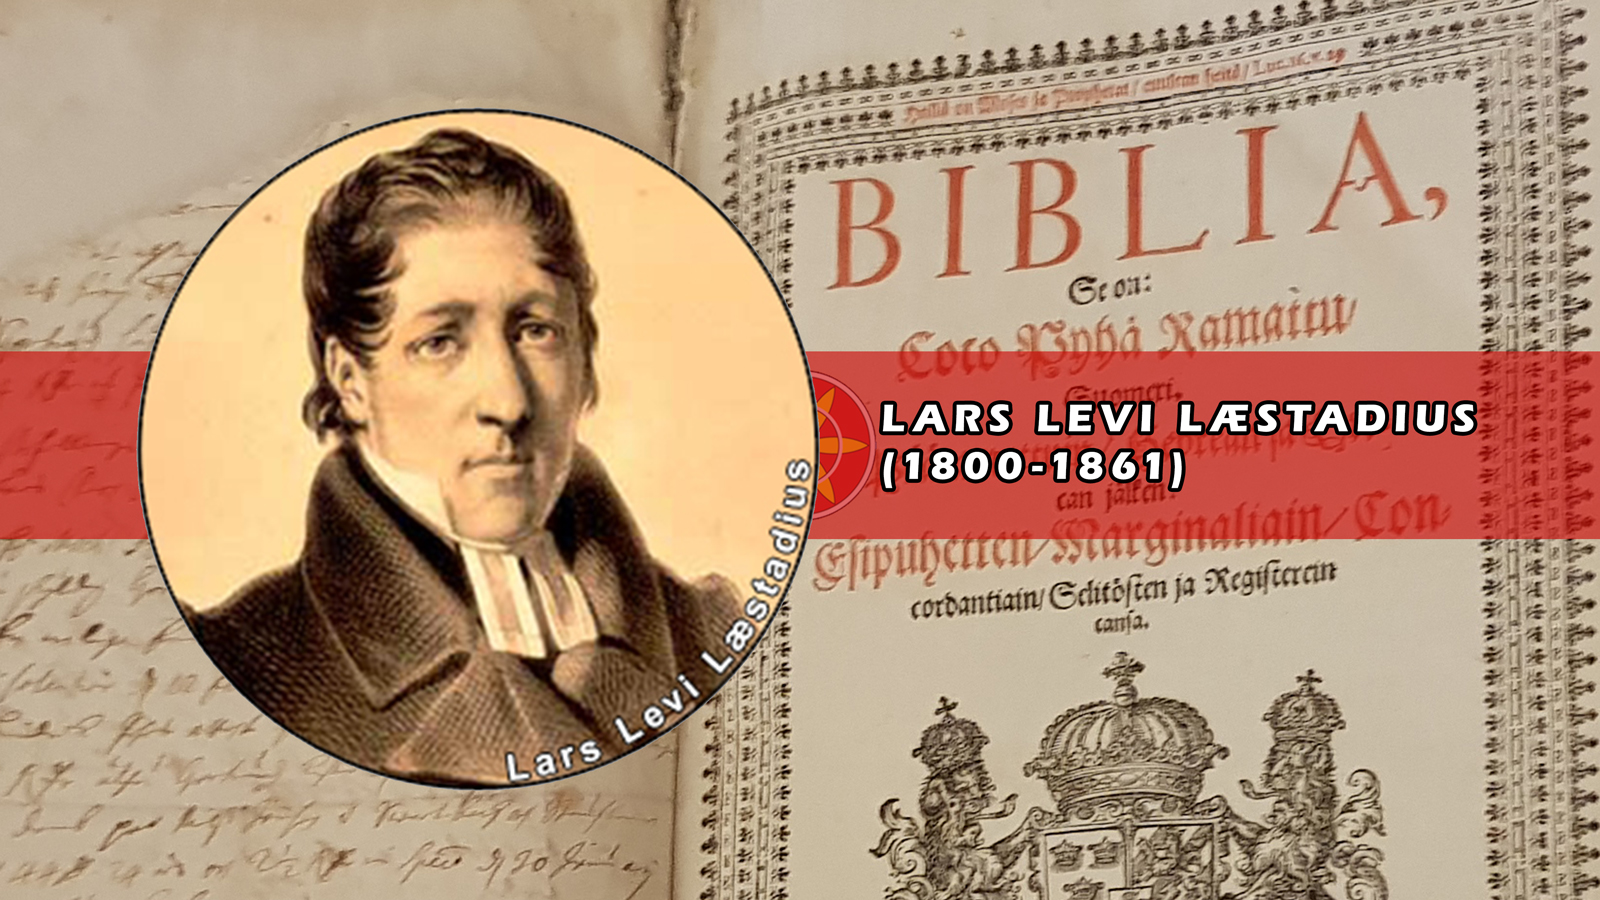 Lars Levi Læstadius